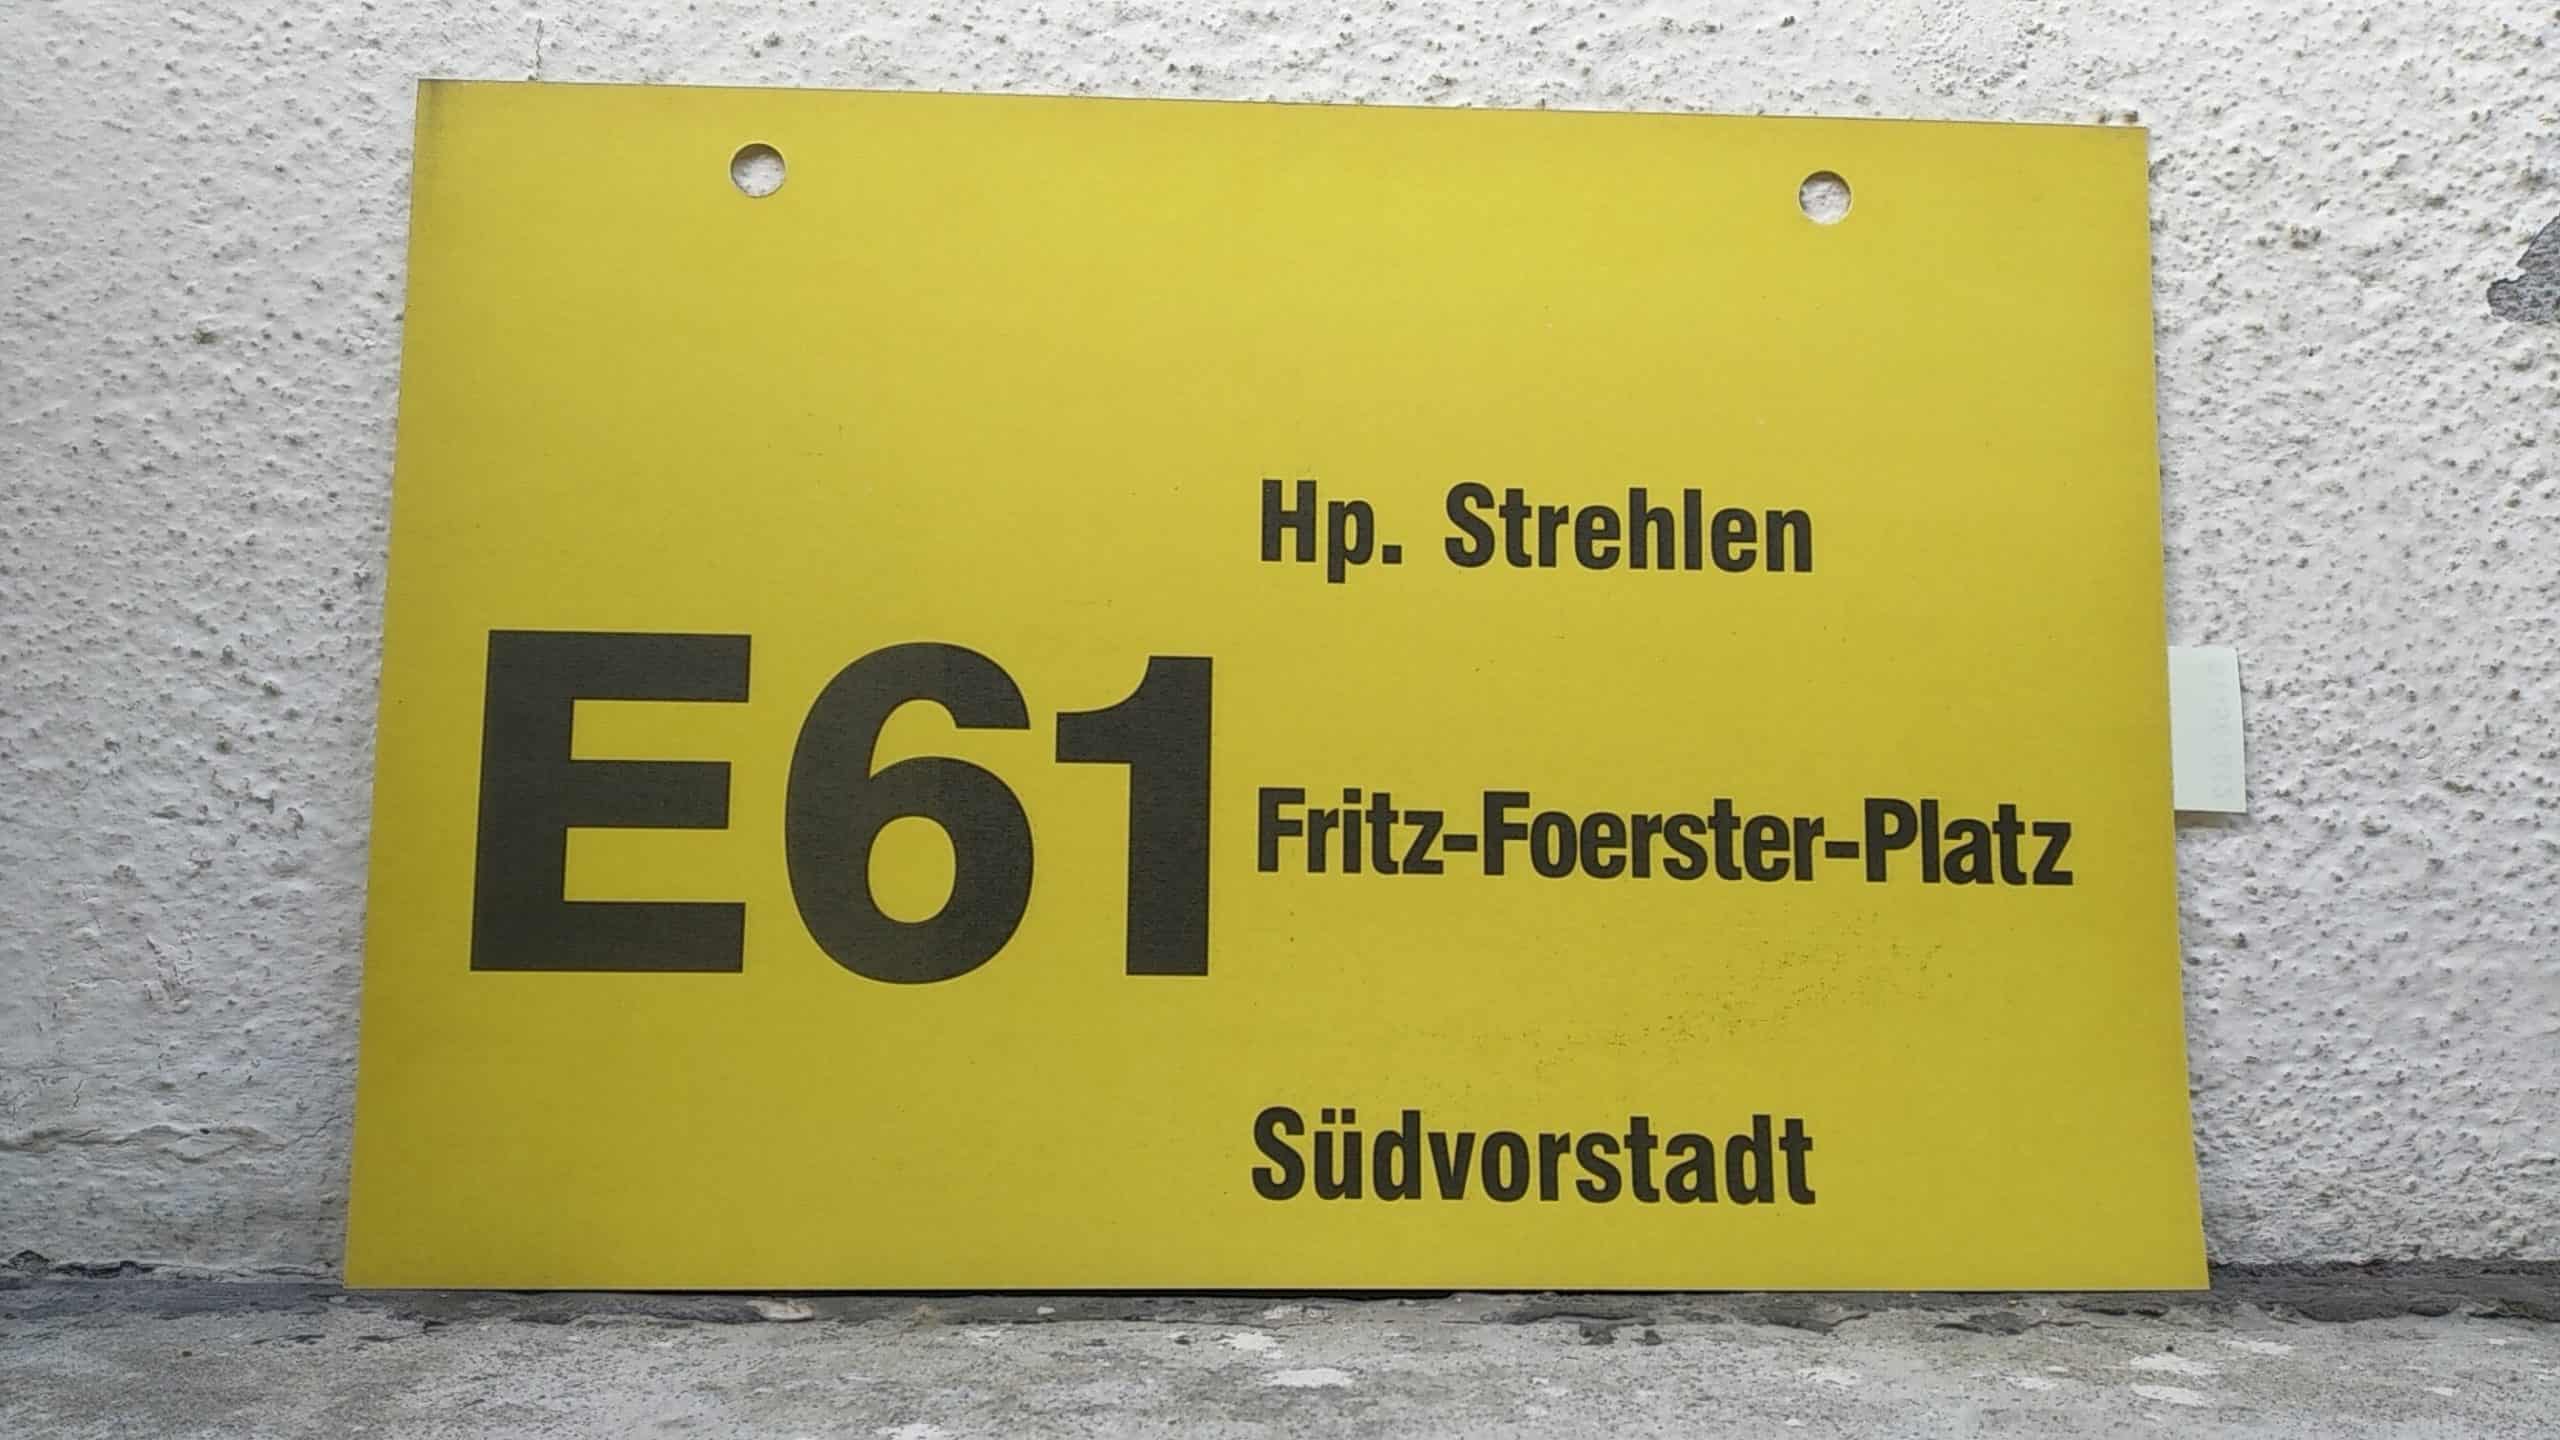 Ein seltenes Bus-Linienschild aus Dresden der Linie E61 von Hp. Strehlen nach Südvorstadt #1